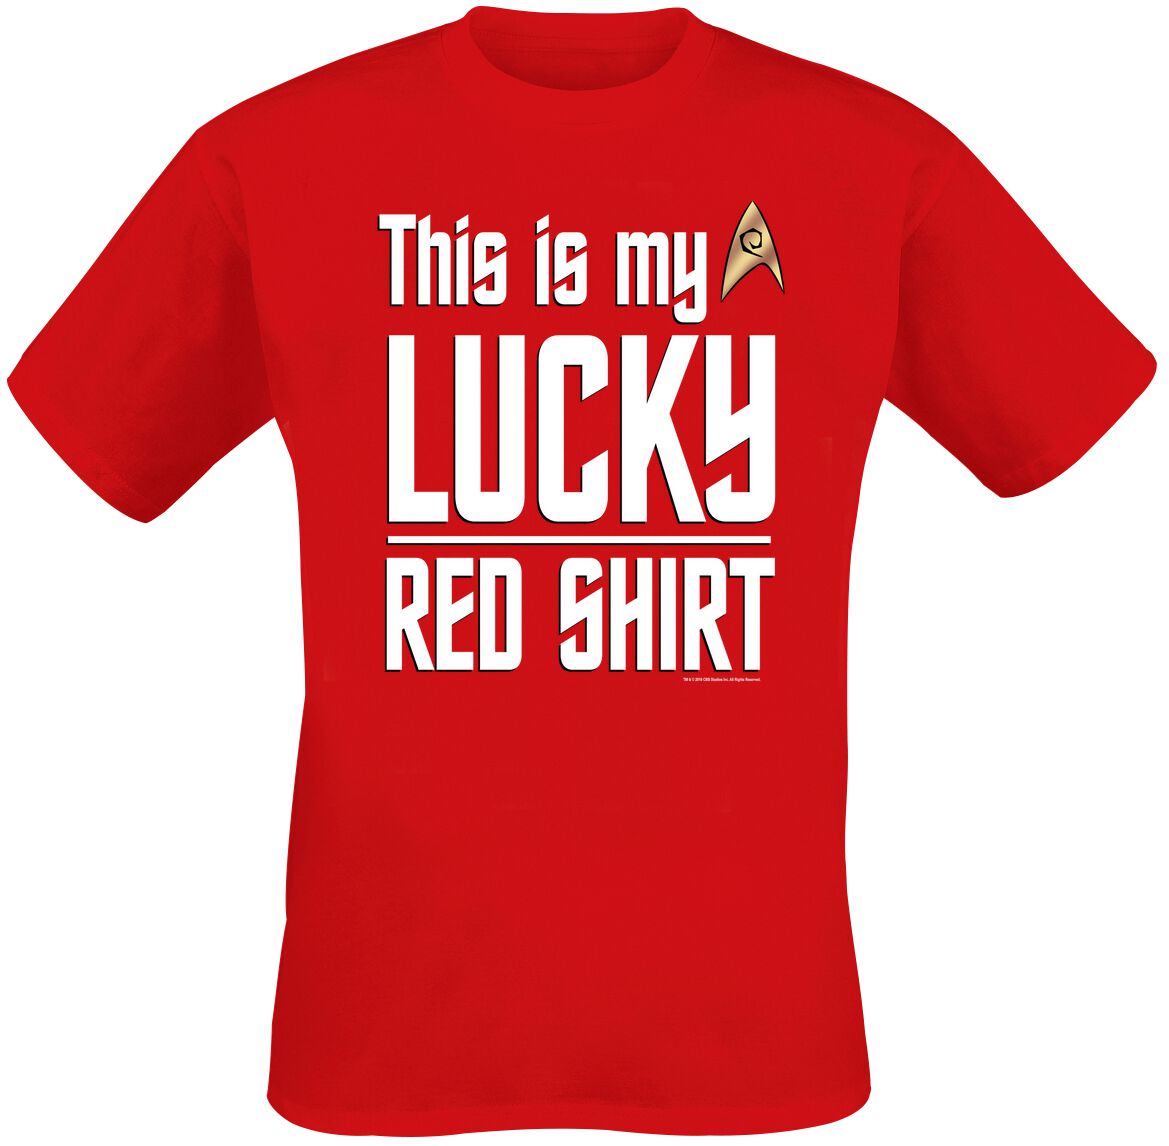 Star Trek Lucky red shirt T-Shirt red